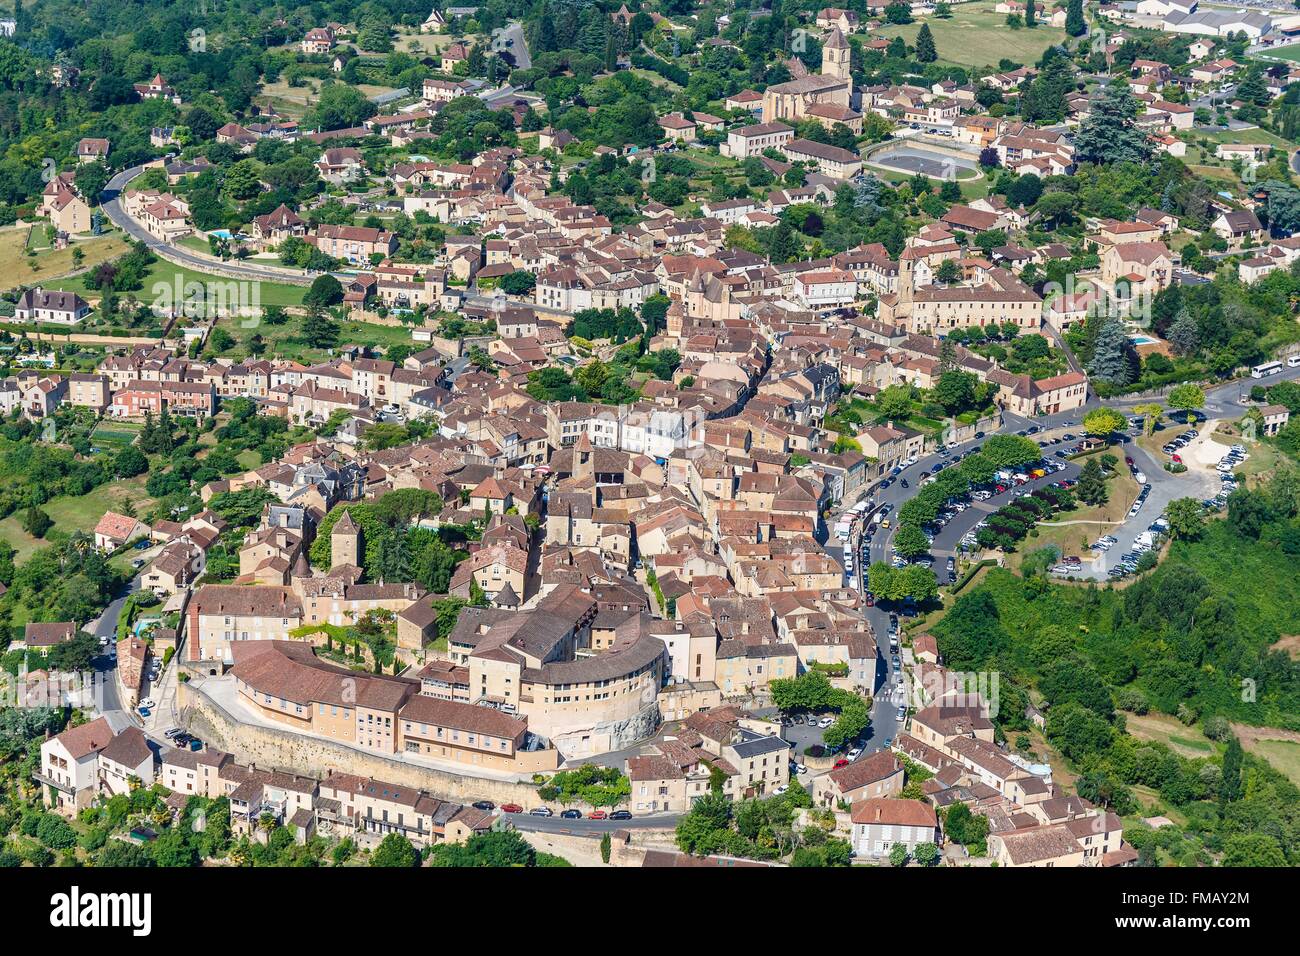 France, Dordogne, Belves, labelled Les Plus Beaux Villages de France (The Most Beautiful Villages of France), the village Stock Photo